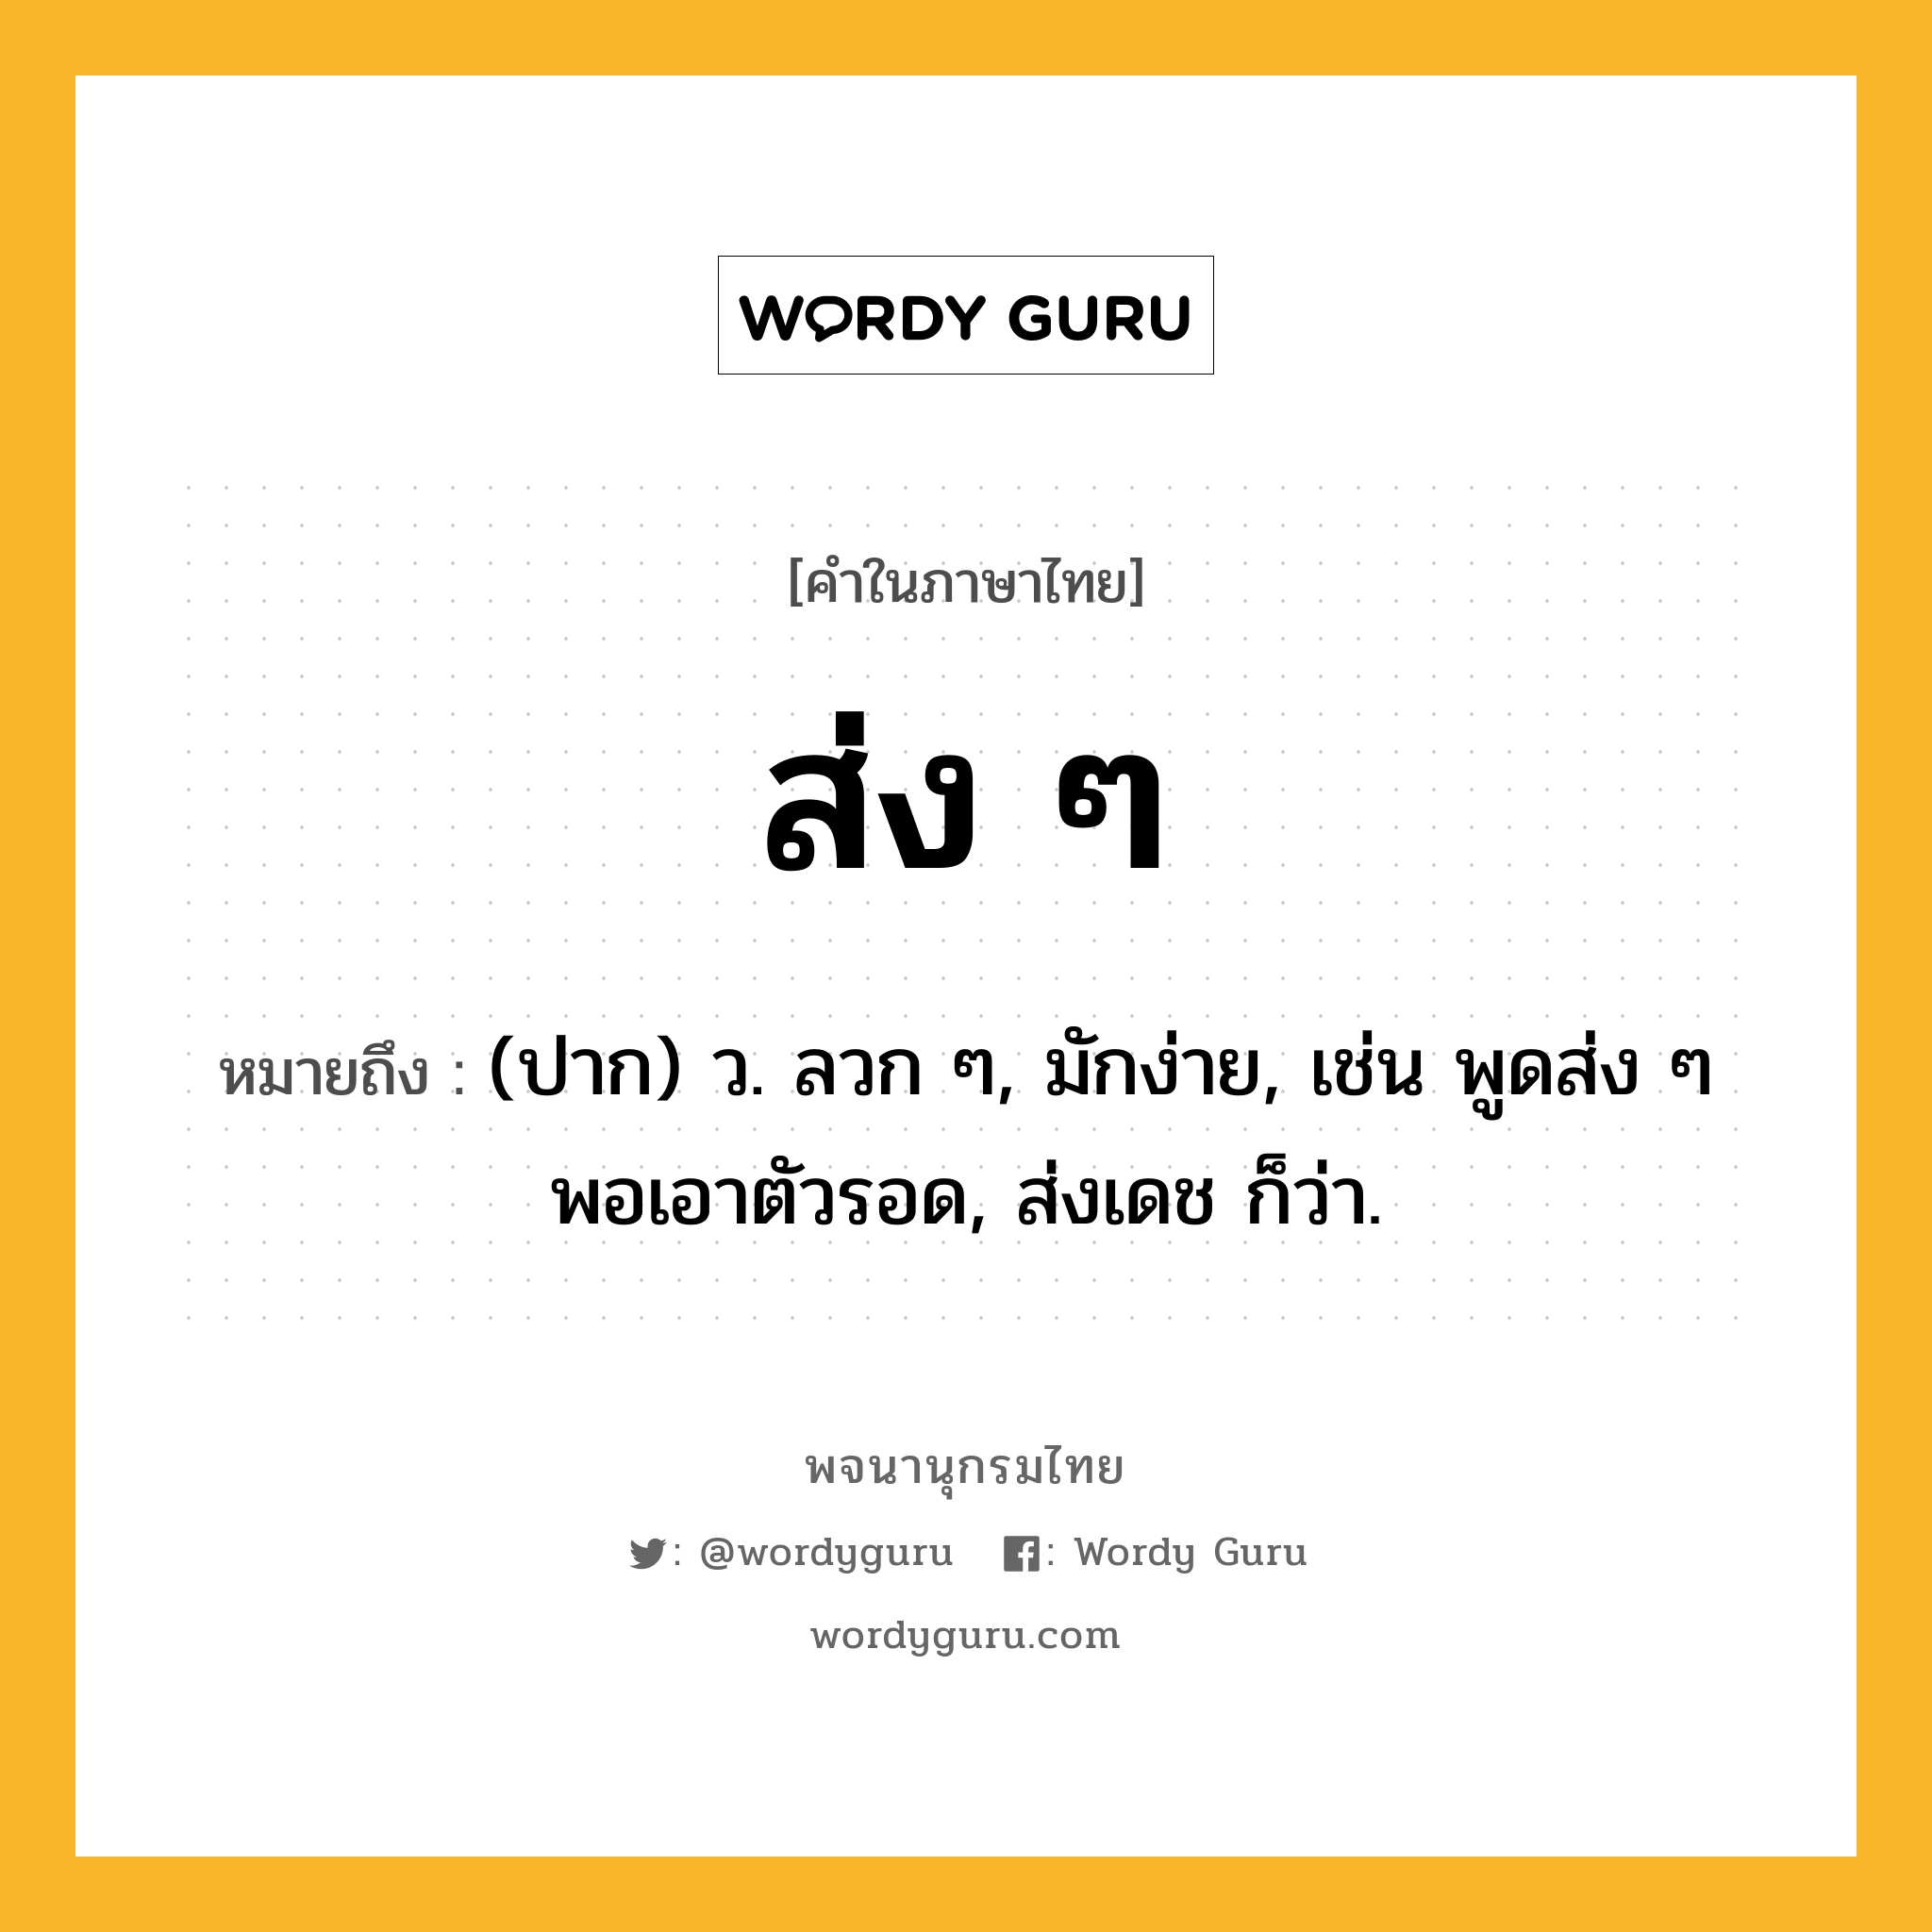 ส่ง ๆ ความหมาย หมายถึงอะไร?, คำในภาษาไทย ส่ง ๆ หมายถึง (ปาก) ว. ลวก ๆ, มักง่าย, เช่น พูดส่ง ๆ พอเอาตัวรอด, ส่งเดช ก็ว่า.